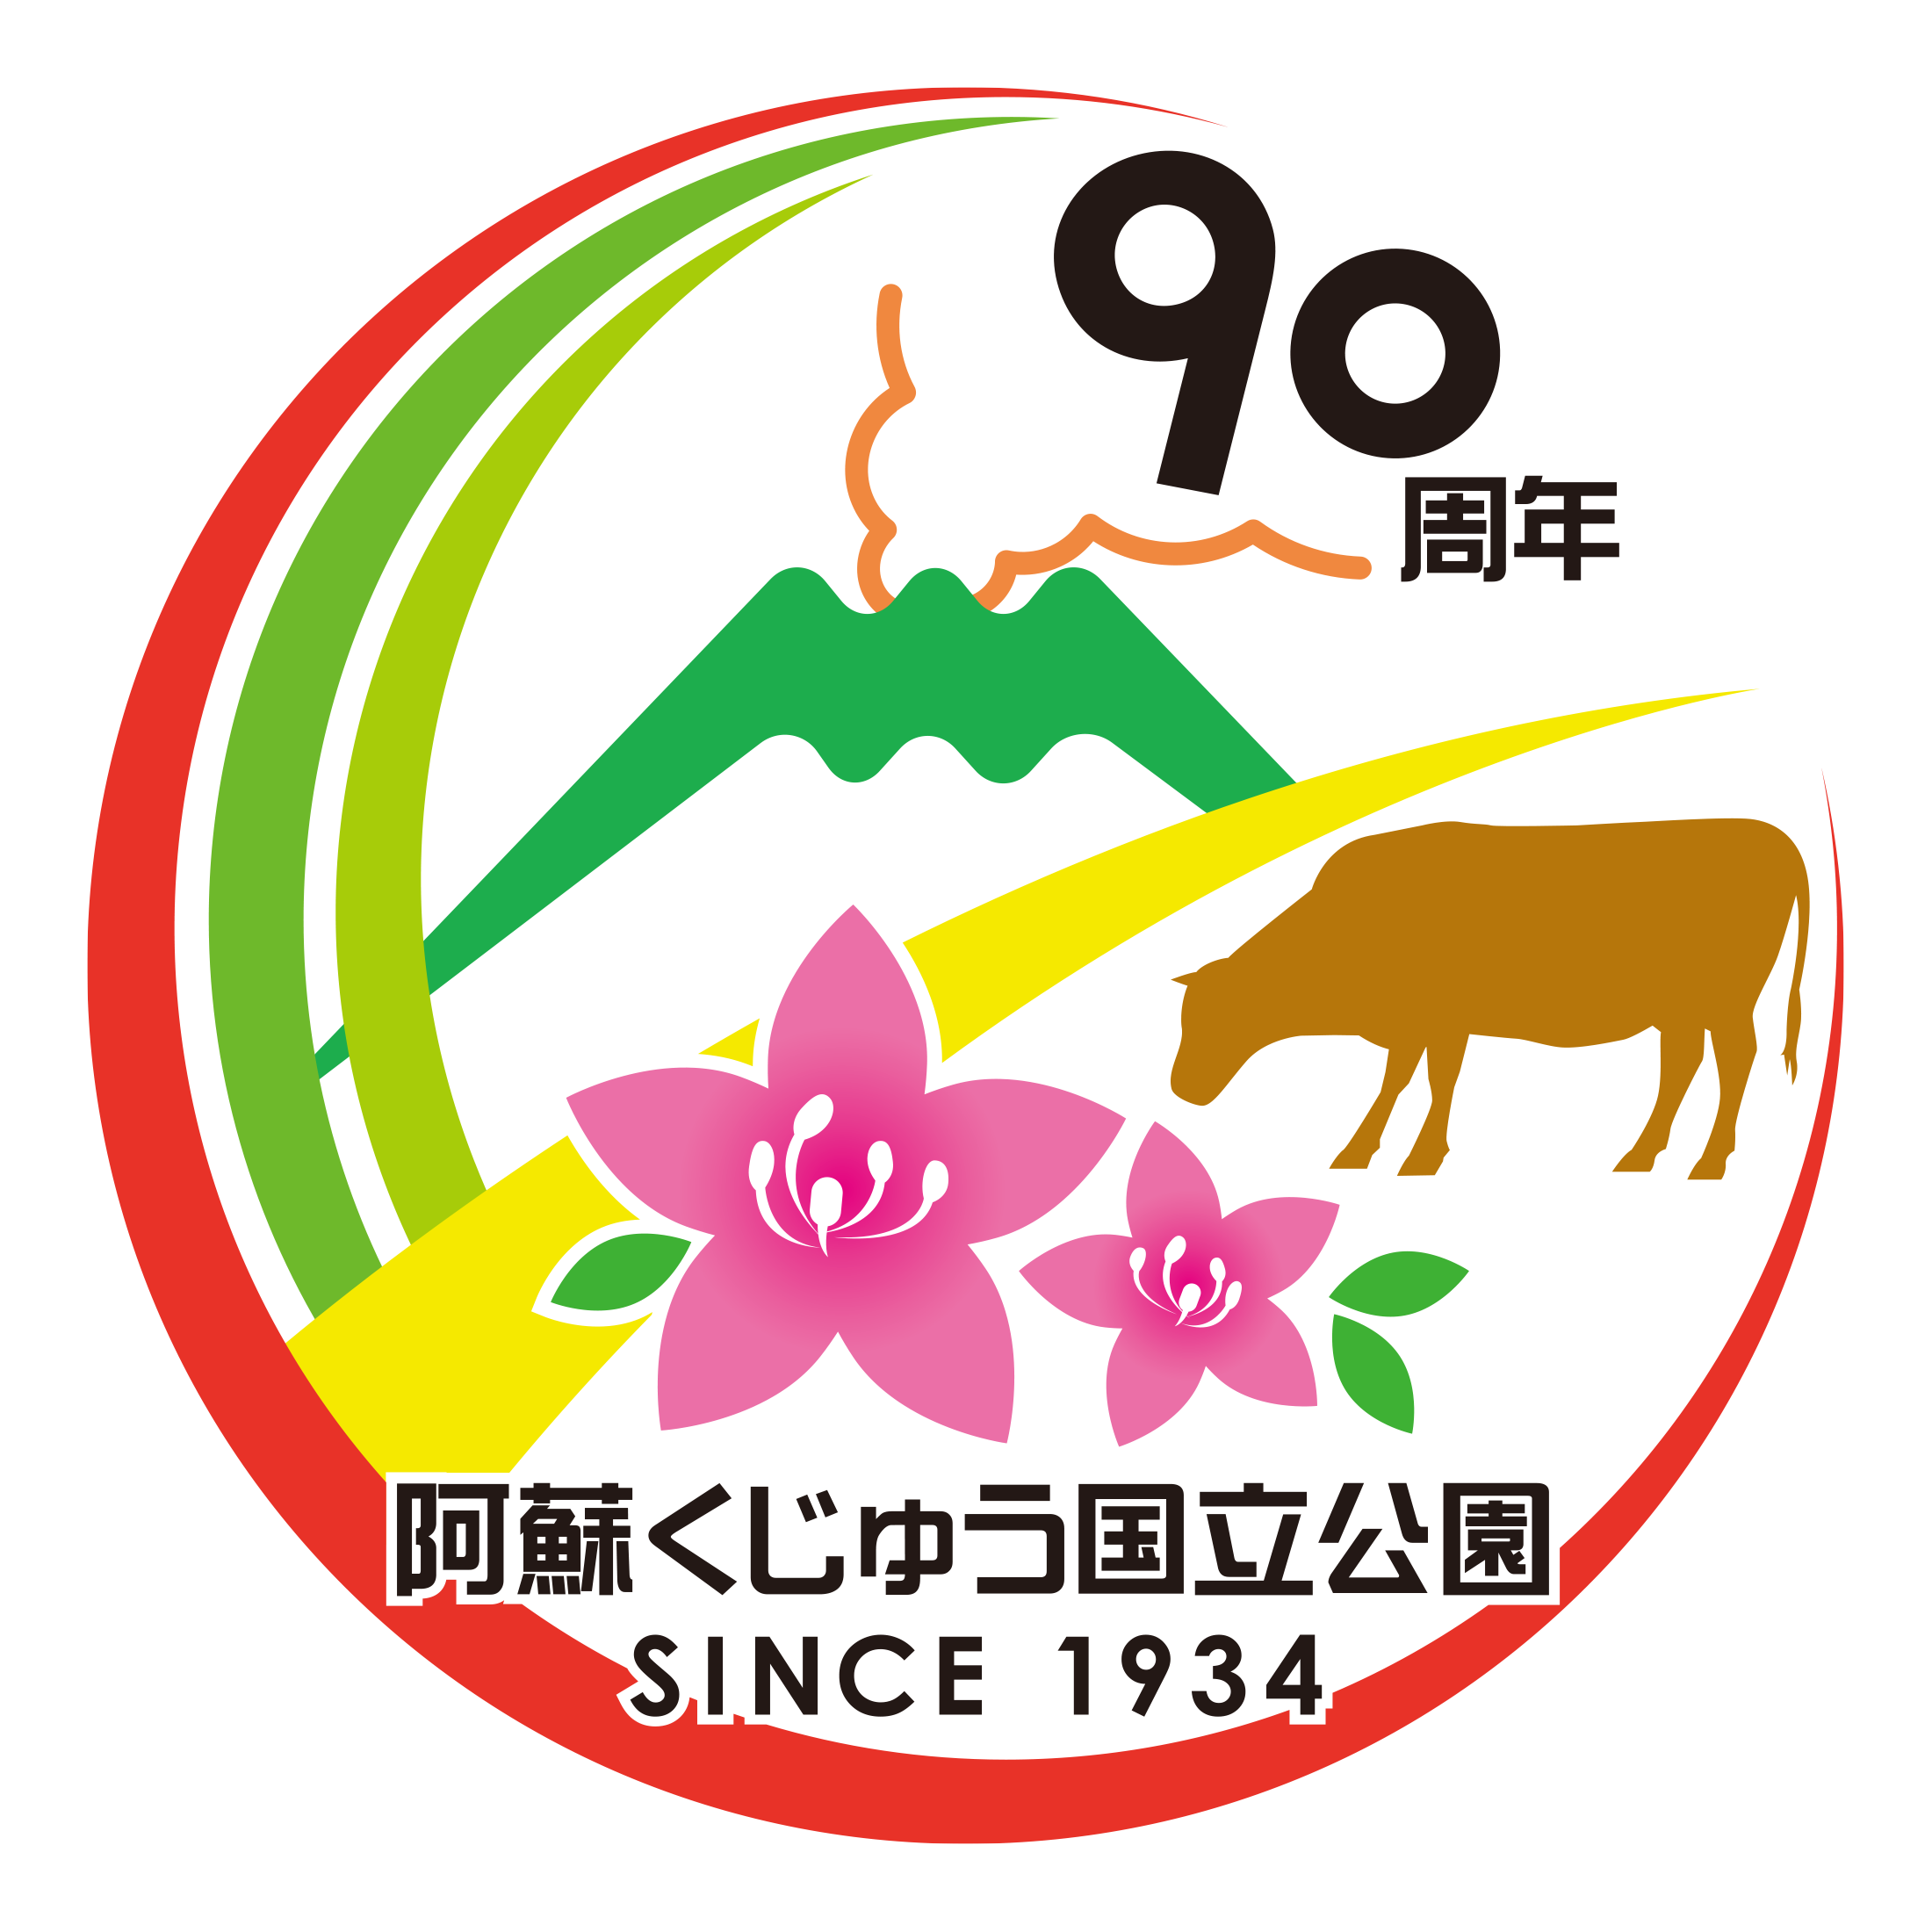 阿蘇くじゅう国立公園は、１９３４年に誕生し、 ２０２４年１２月４日に指定９０周年の節目を迎えます　 世界最大級カルデラにそびえる阿蘇の山や、くじゅう連山など、素晴らしい雄大な風景を見ることができます